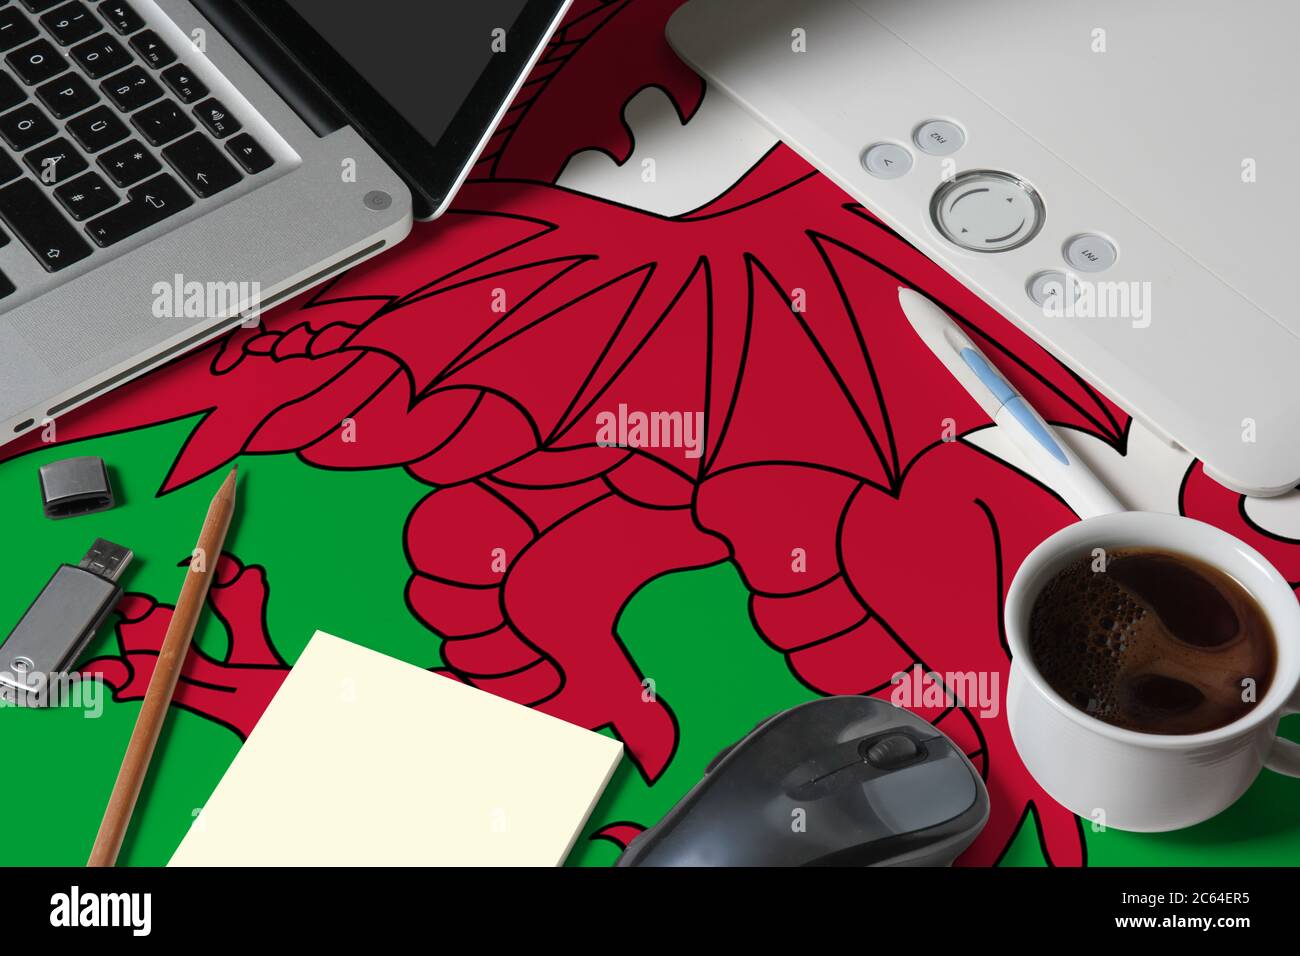 Wales Nationalflagge auf der Draufsicht Arbeitsplatz des kreativen Designers mit Laptop, Computer-Tastatur, usb-Laufwerk, Grafik-Tablet, Kaffeetasse, Maus auf Holz Stockfoto